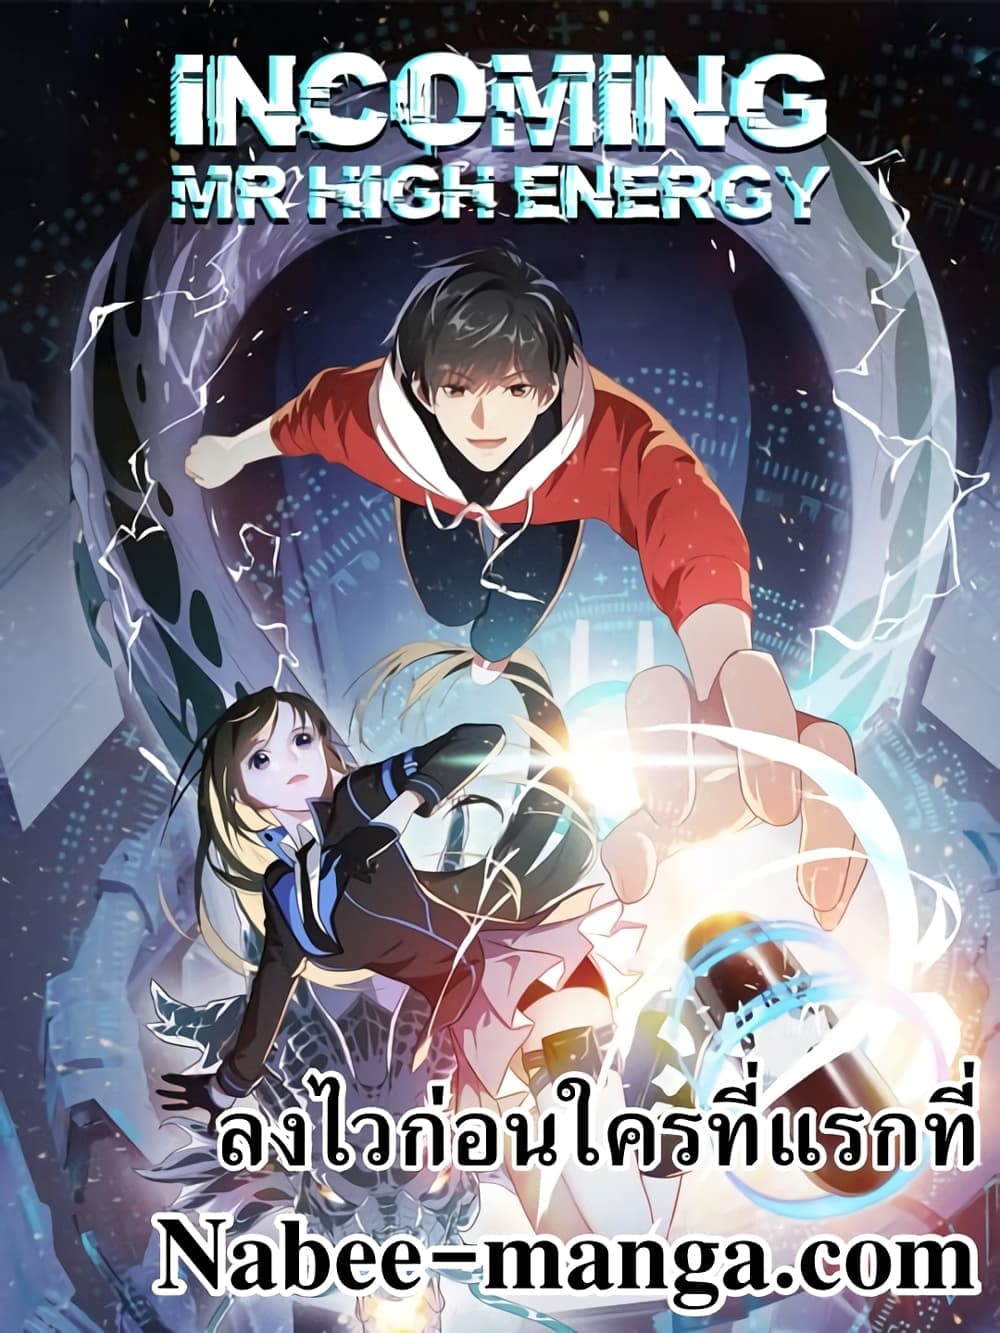 High Energy Strikes 311-311